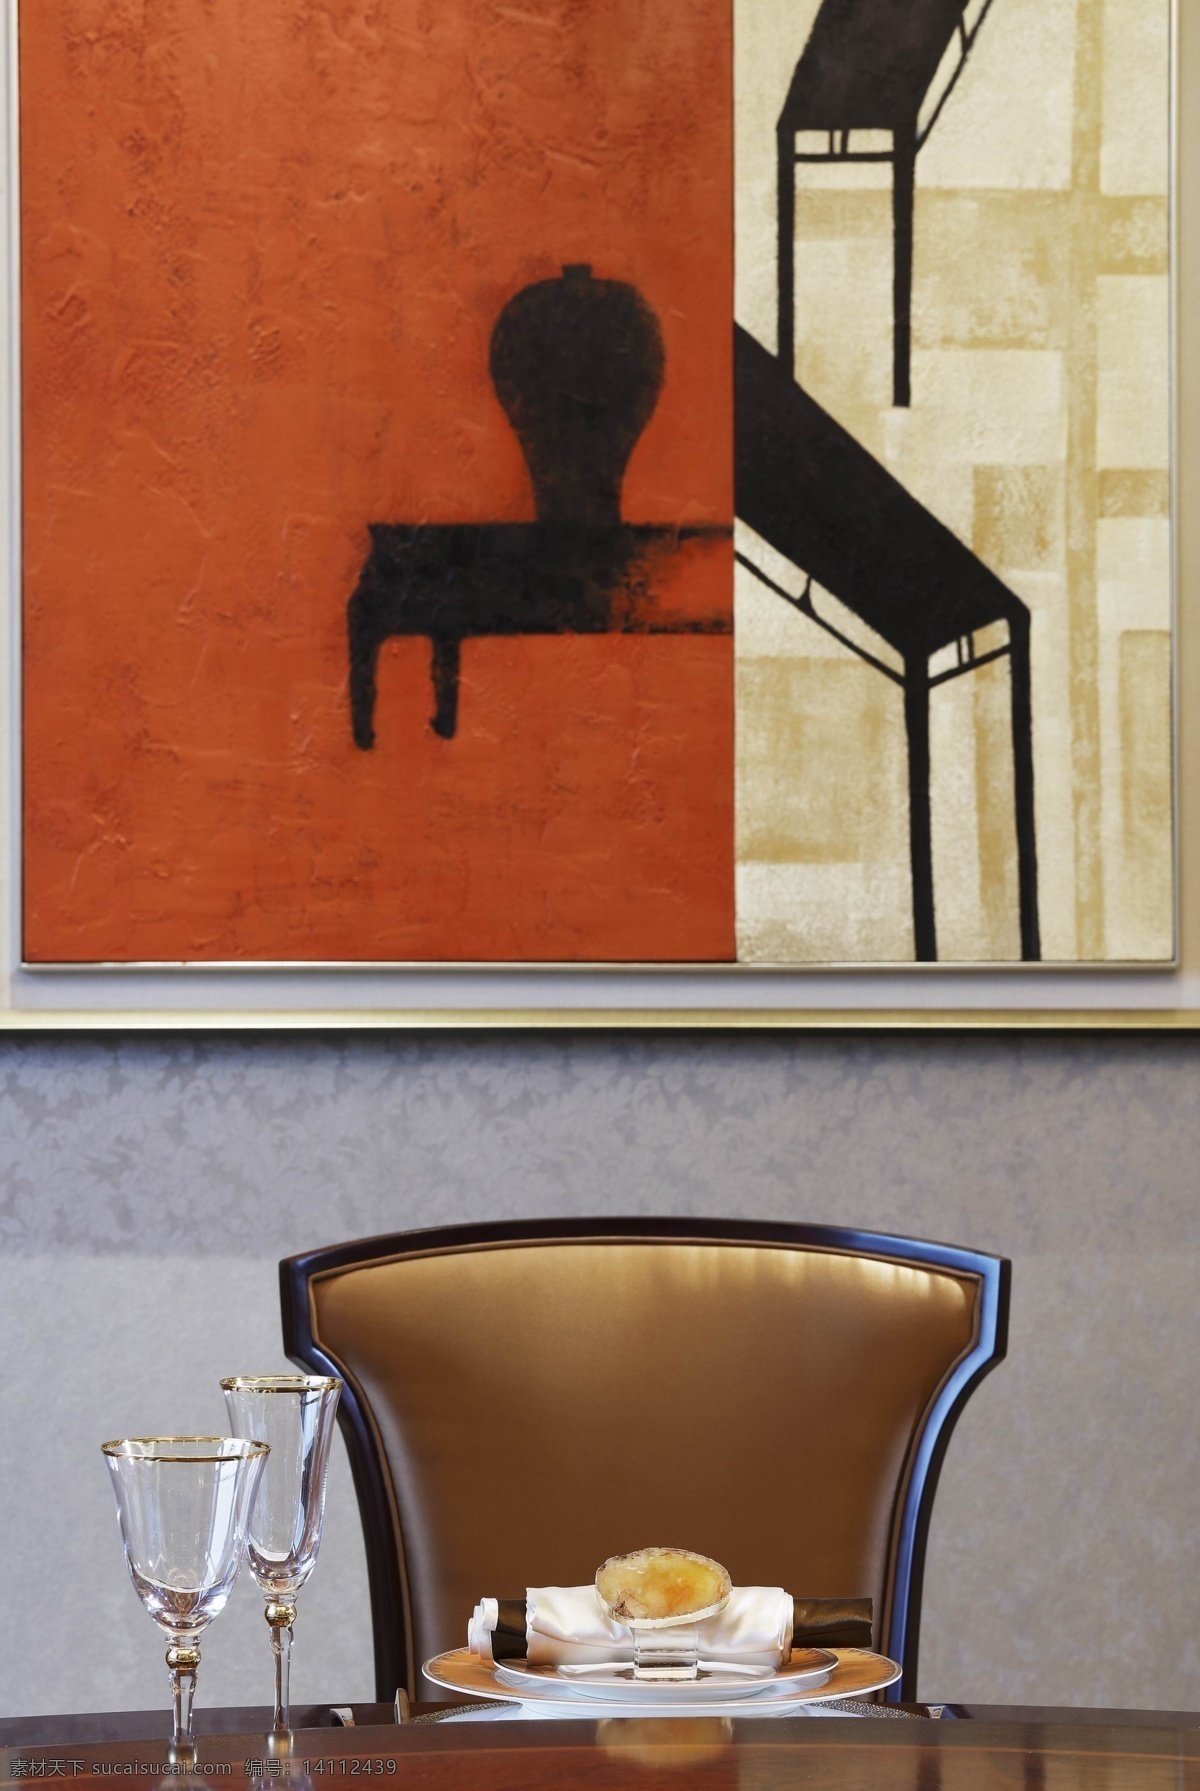 独自 一人 餐厅 室内设计 家装 效果图 真皮座椅 典雅墙面画 高脚杯 西餐 美味 彩色 实景设计 装潢设计